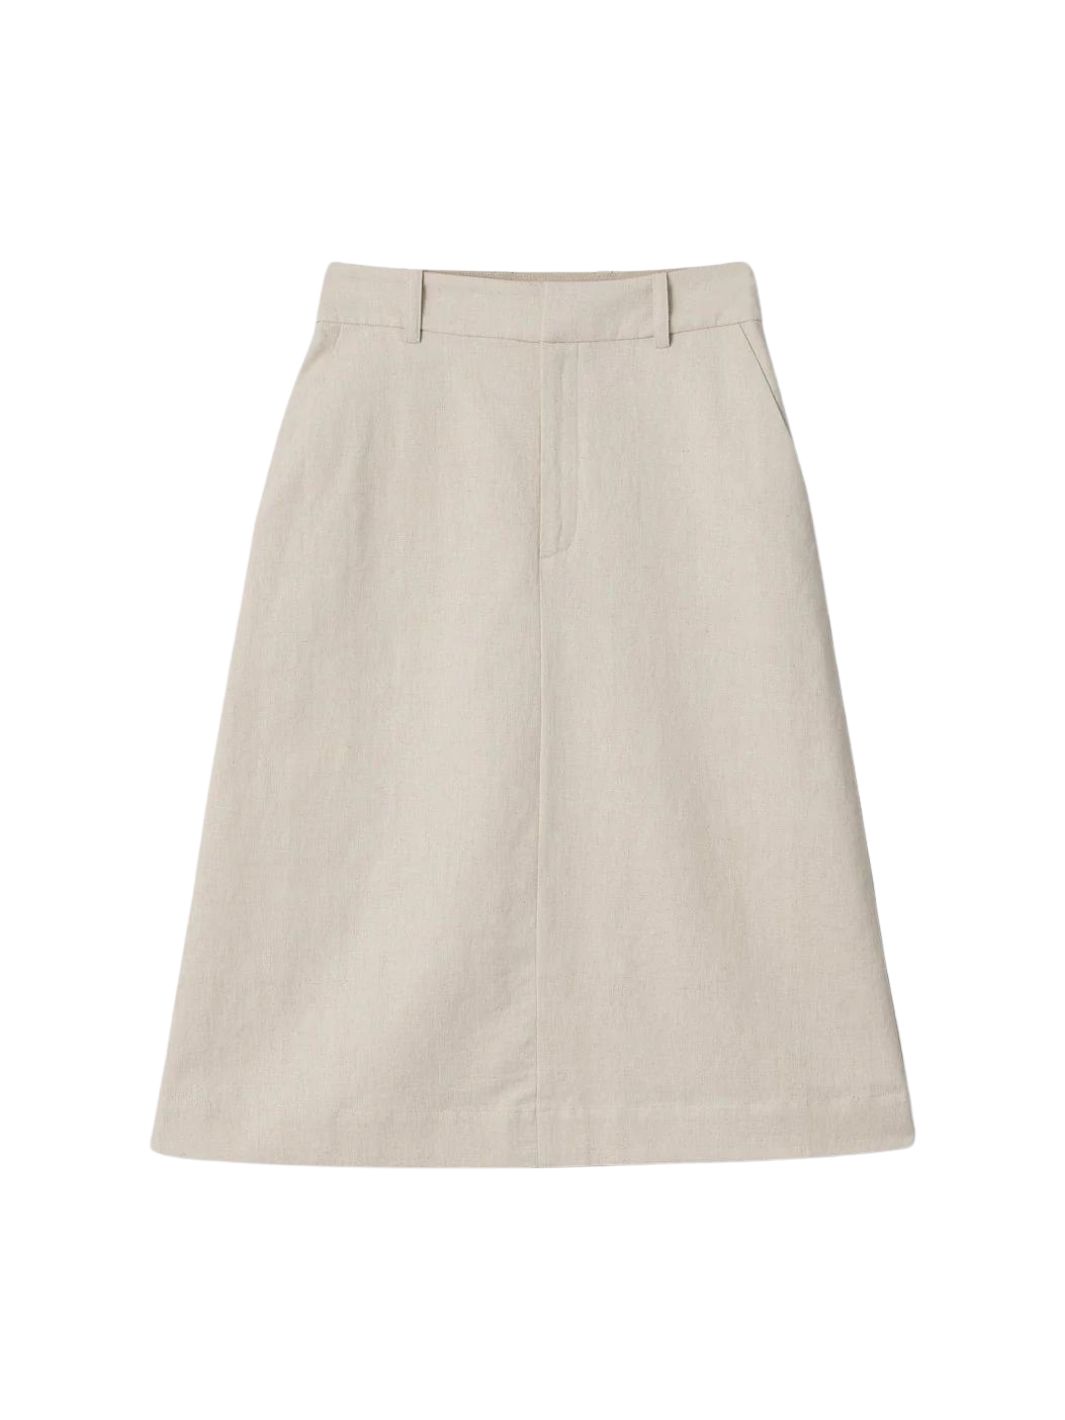 Fall Winter Spring Summer Skirts Skirt | Linen Côte D’Azur Skirt Natural